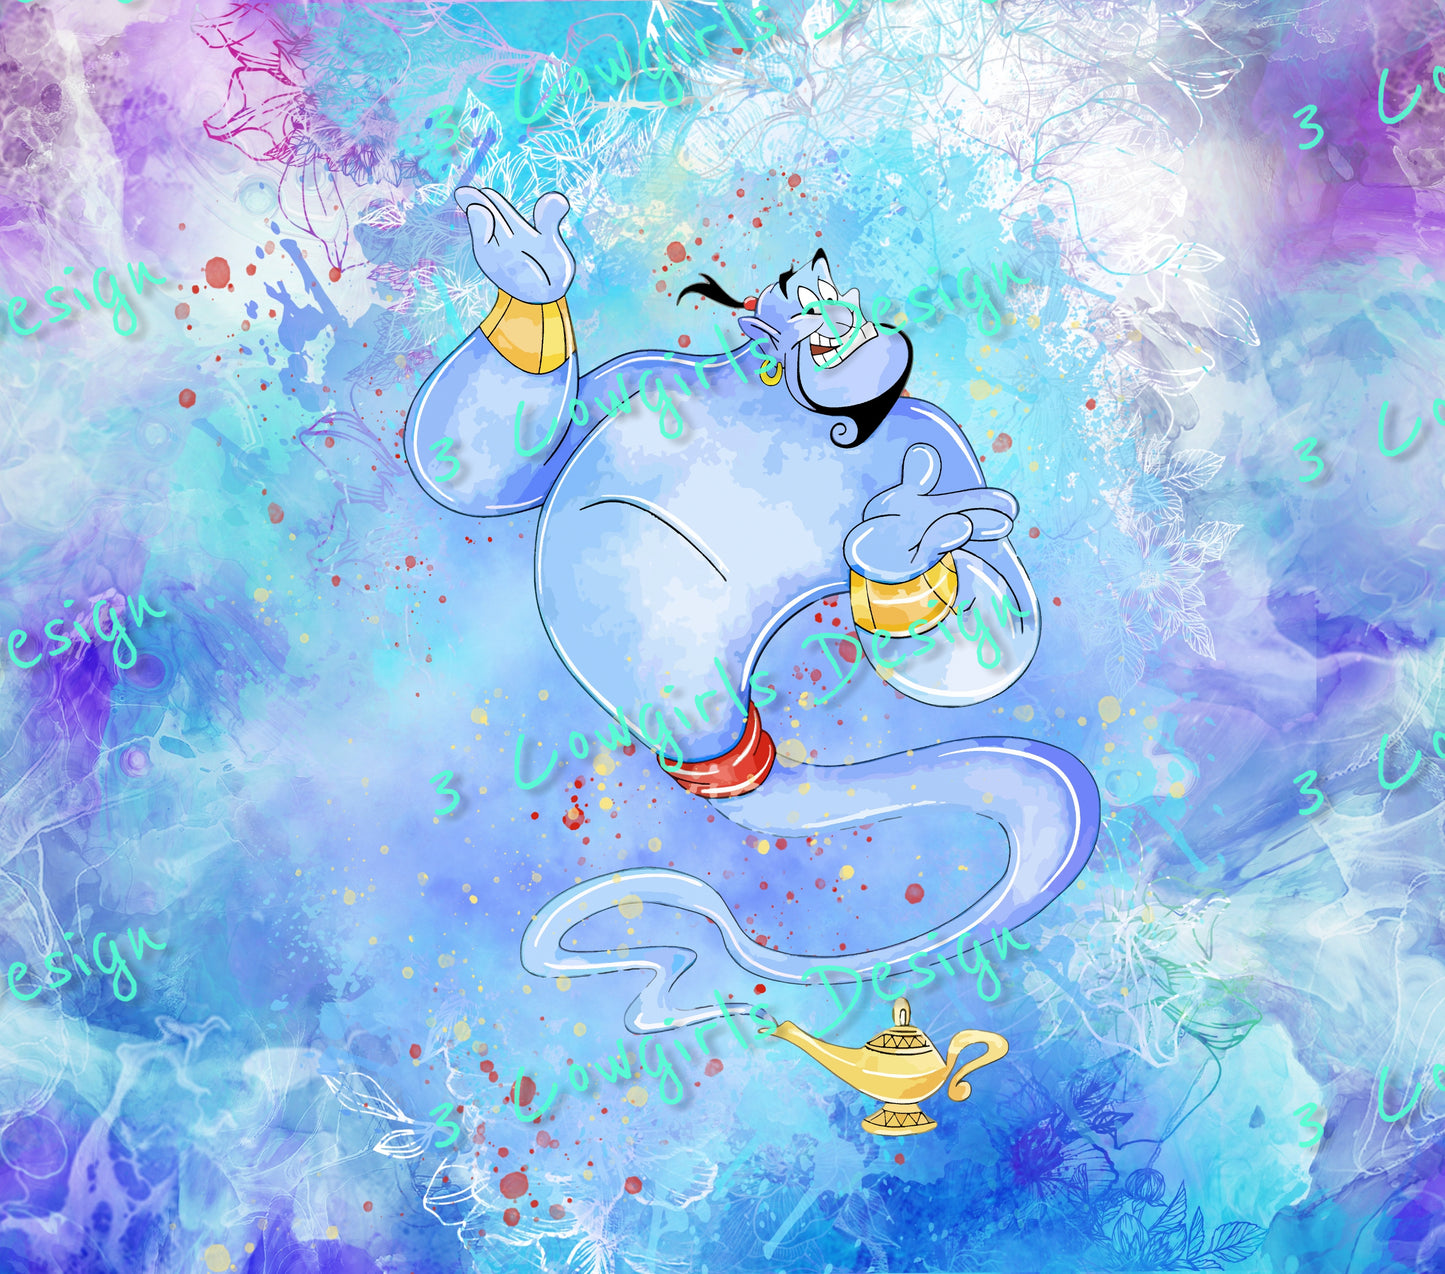 88 Genie- Aladdin